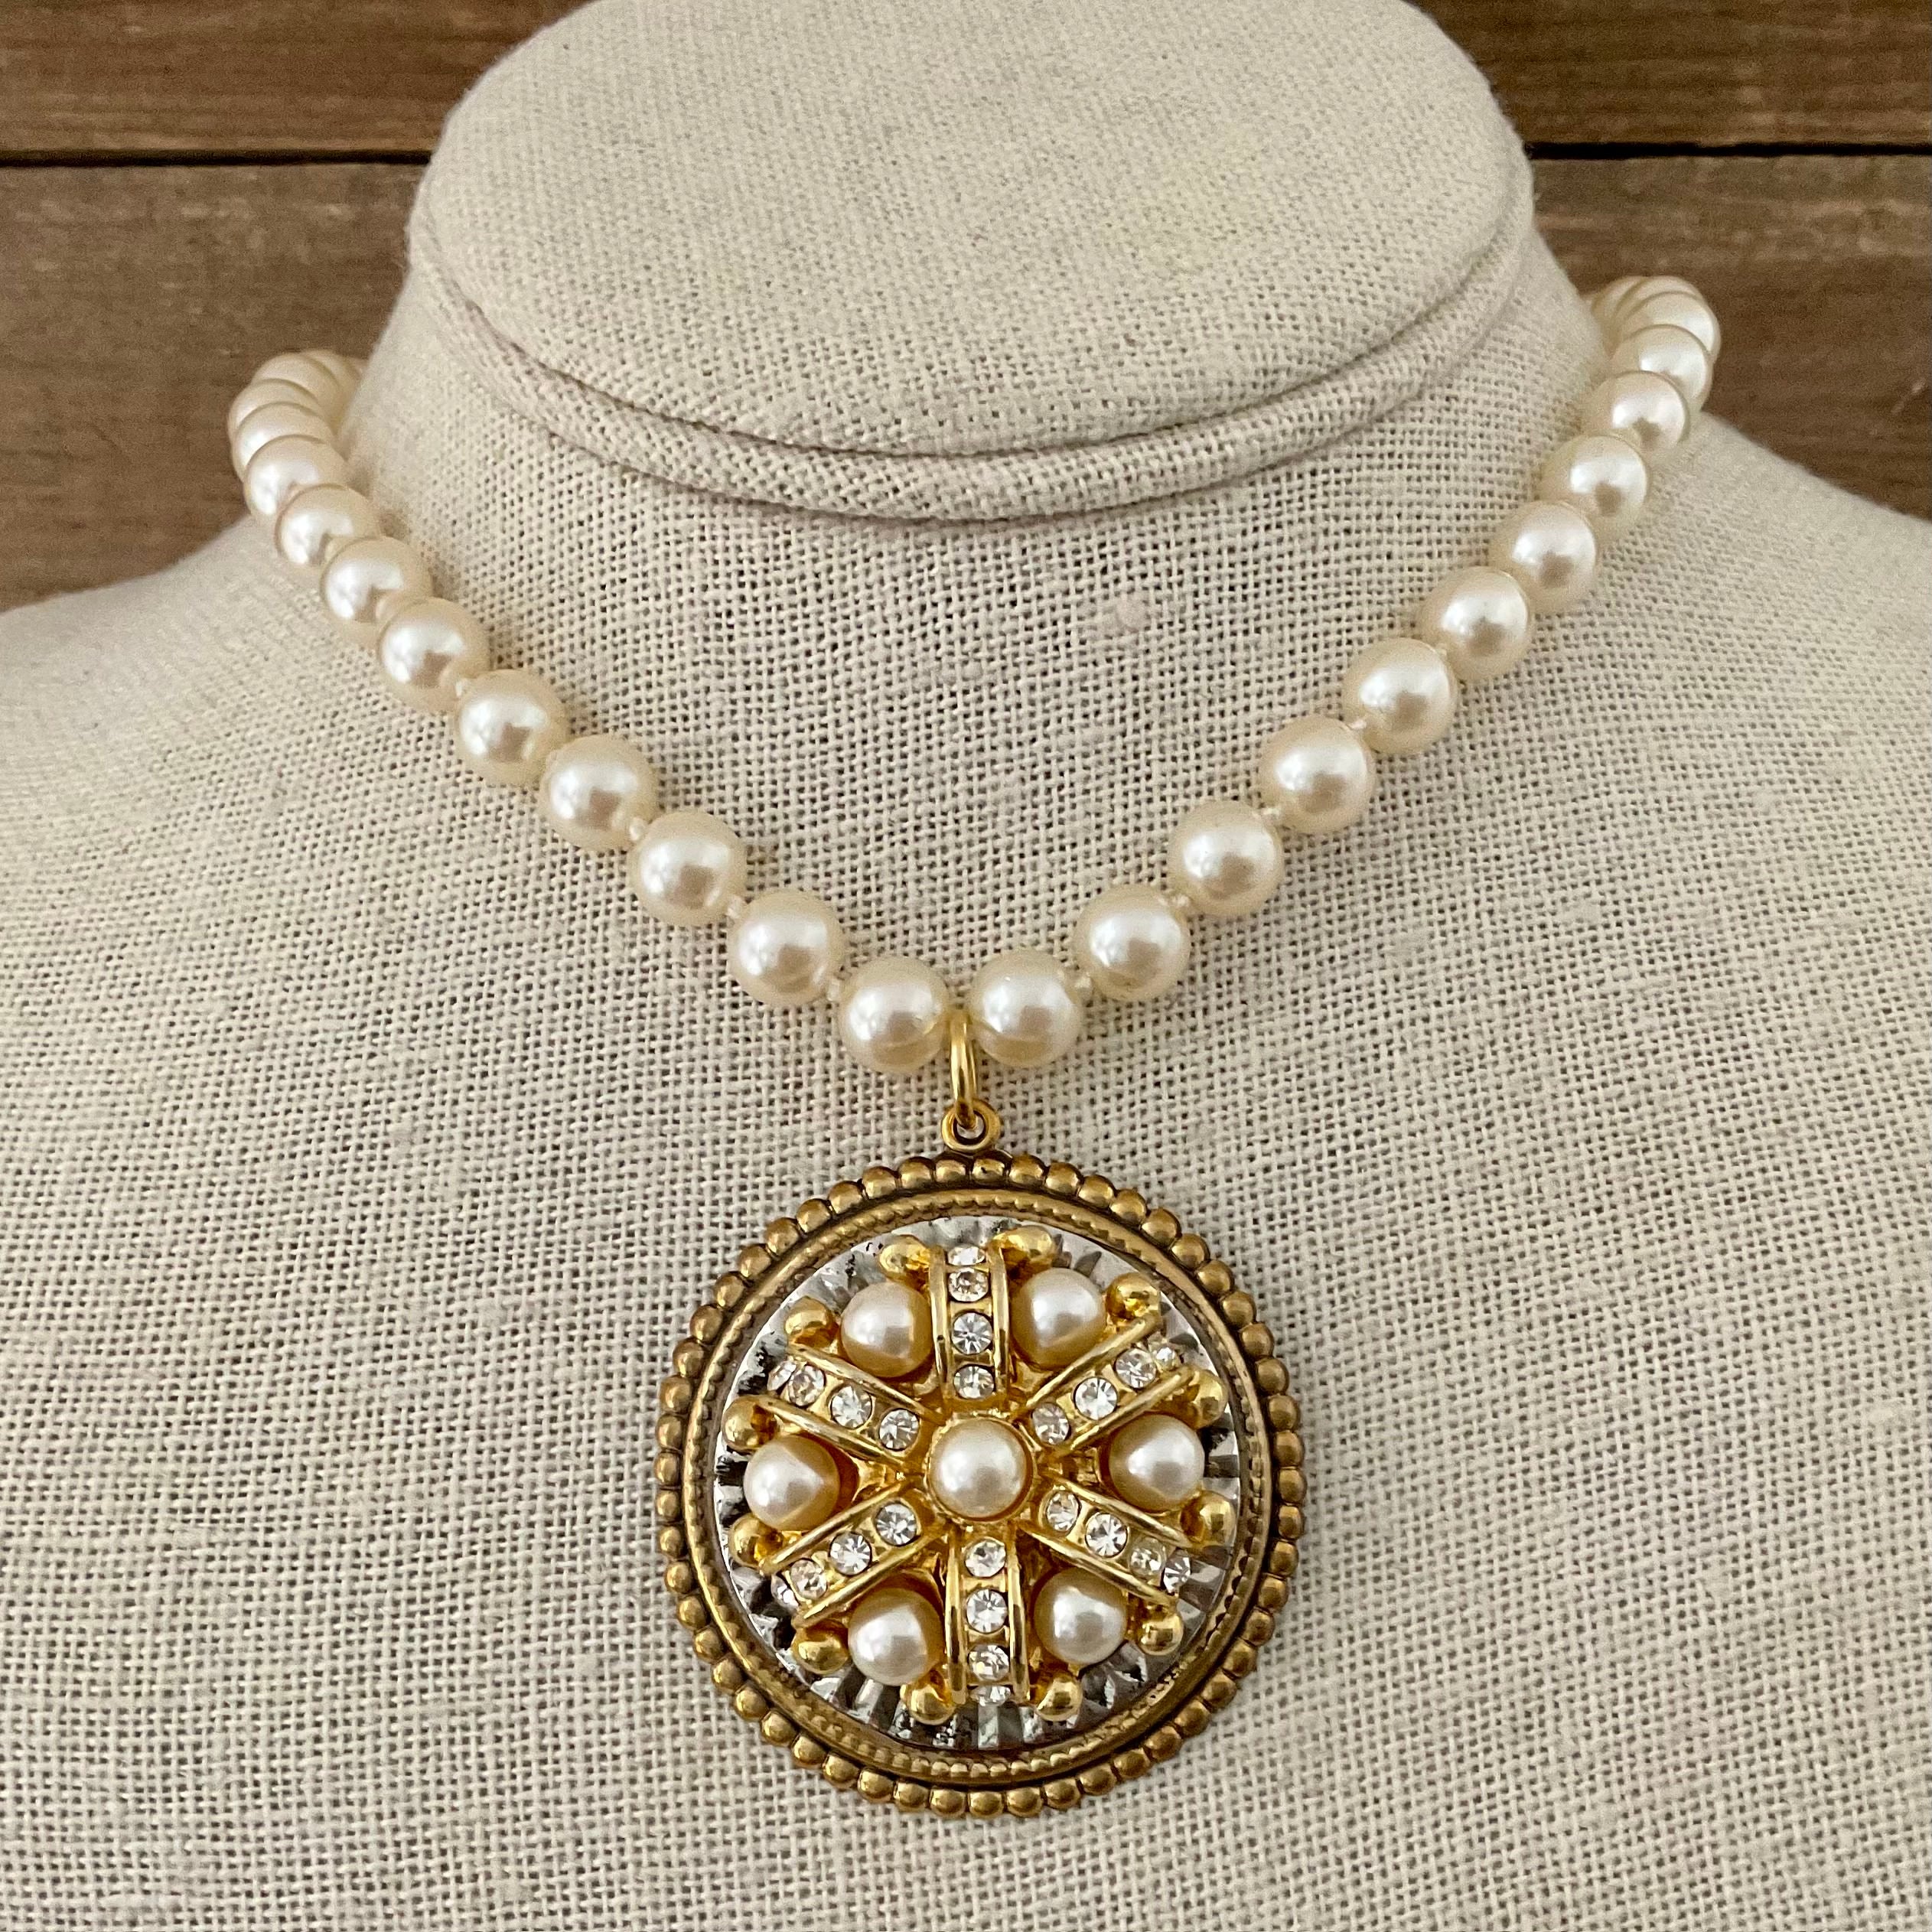 Vintage Pearls with Repurposed Vintage Earring Pendant